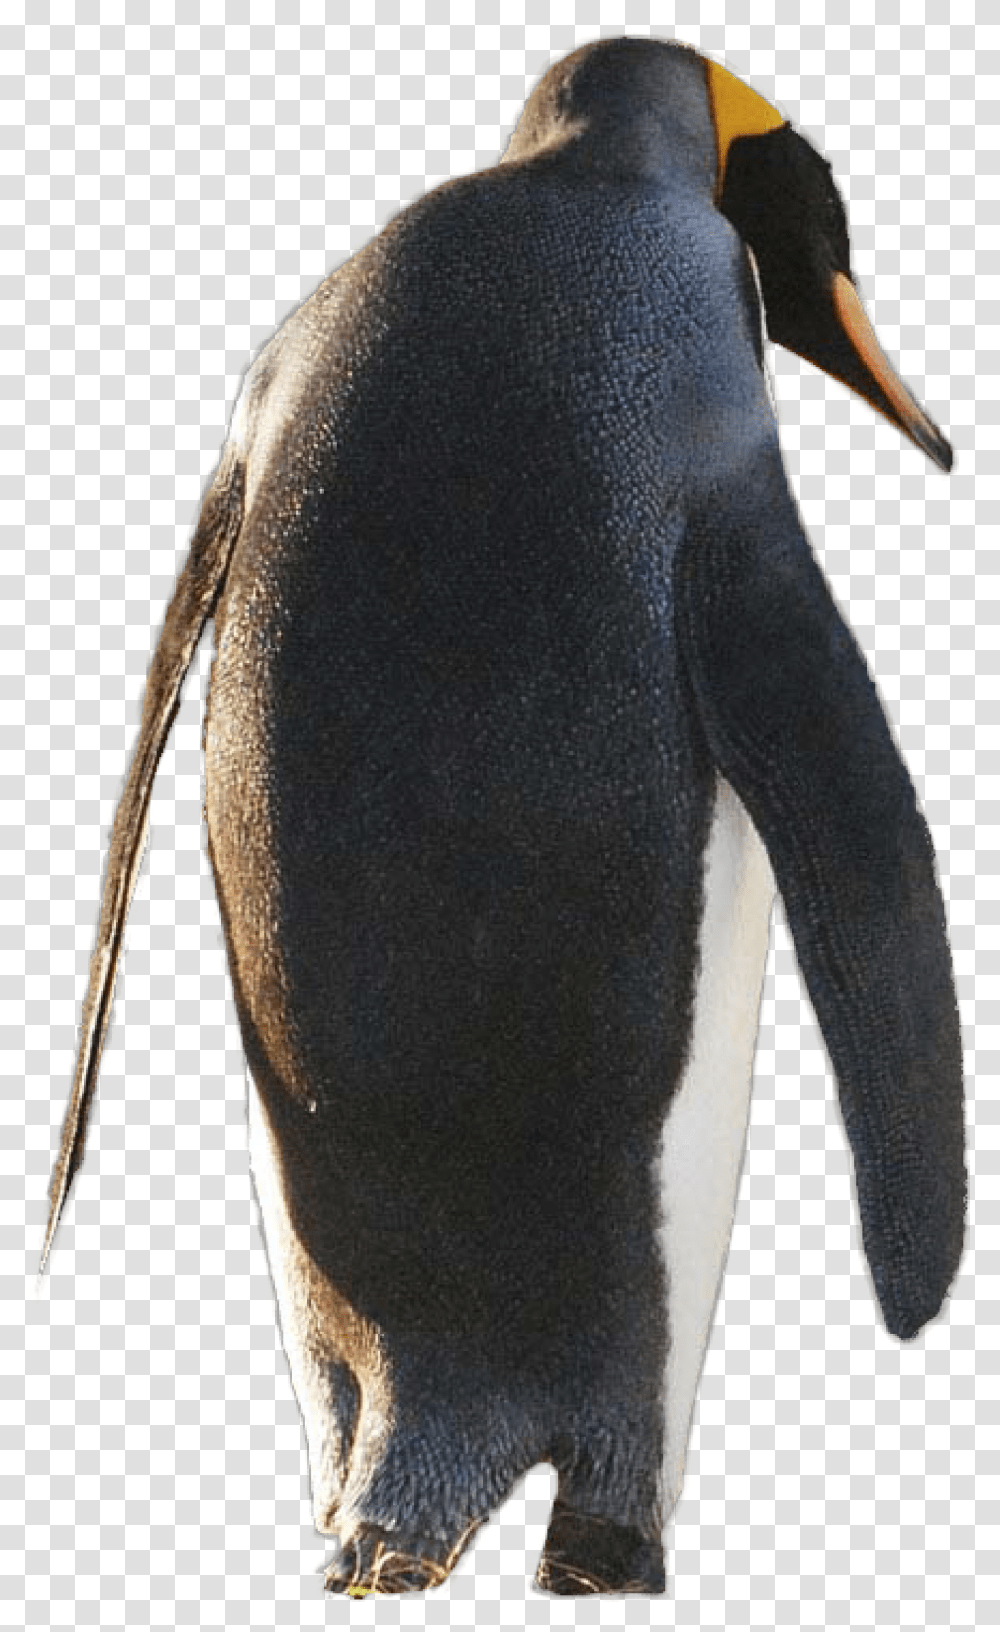 Gentoo Penguin, Animal, Bird, Person, Human Transparent Png